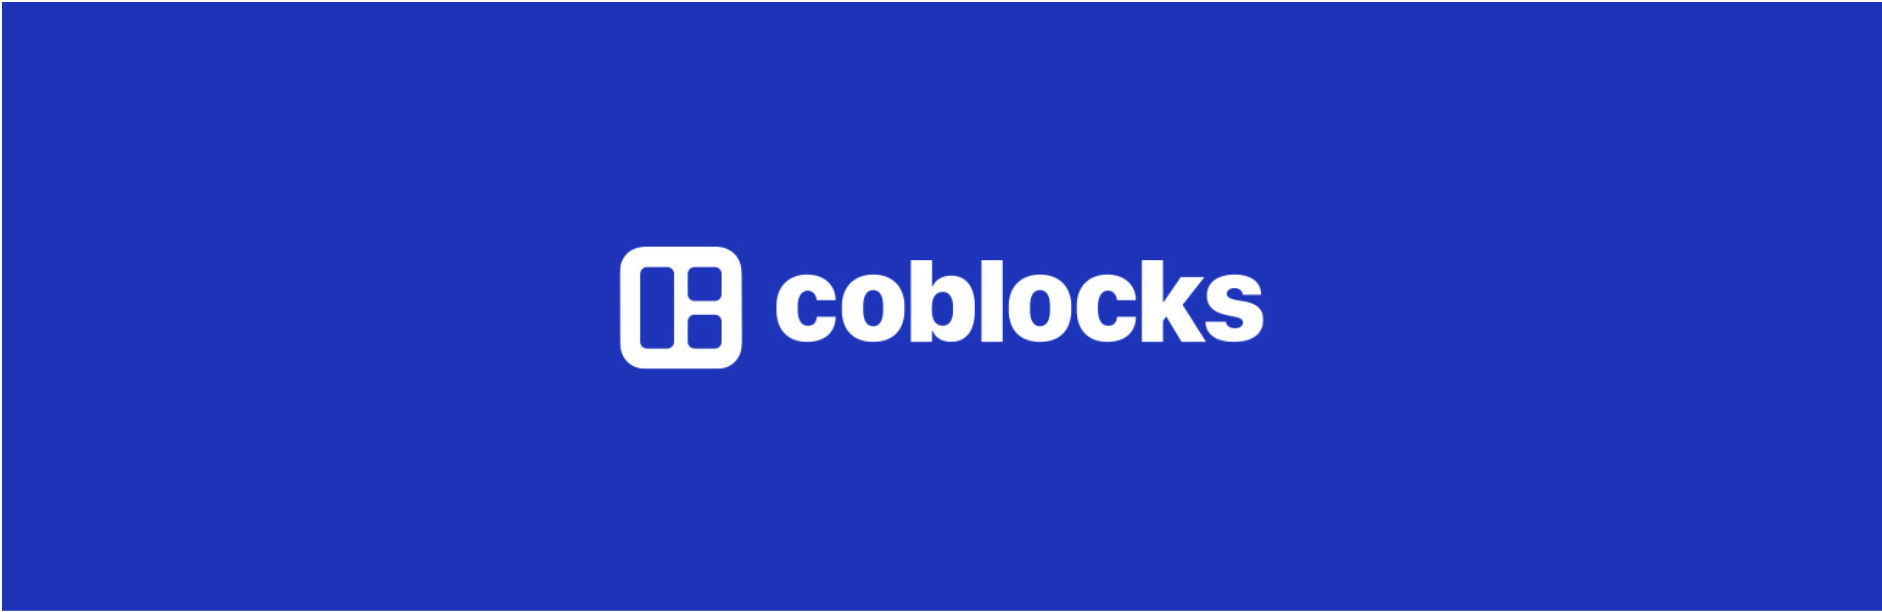 The CoBlocks plugin.